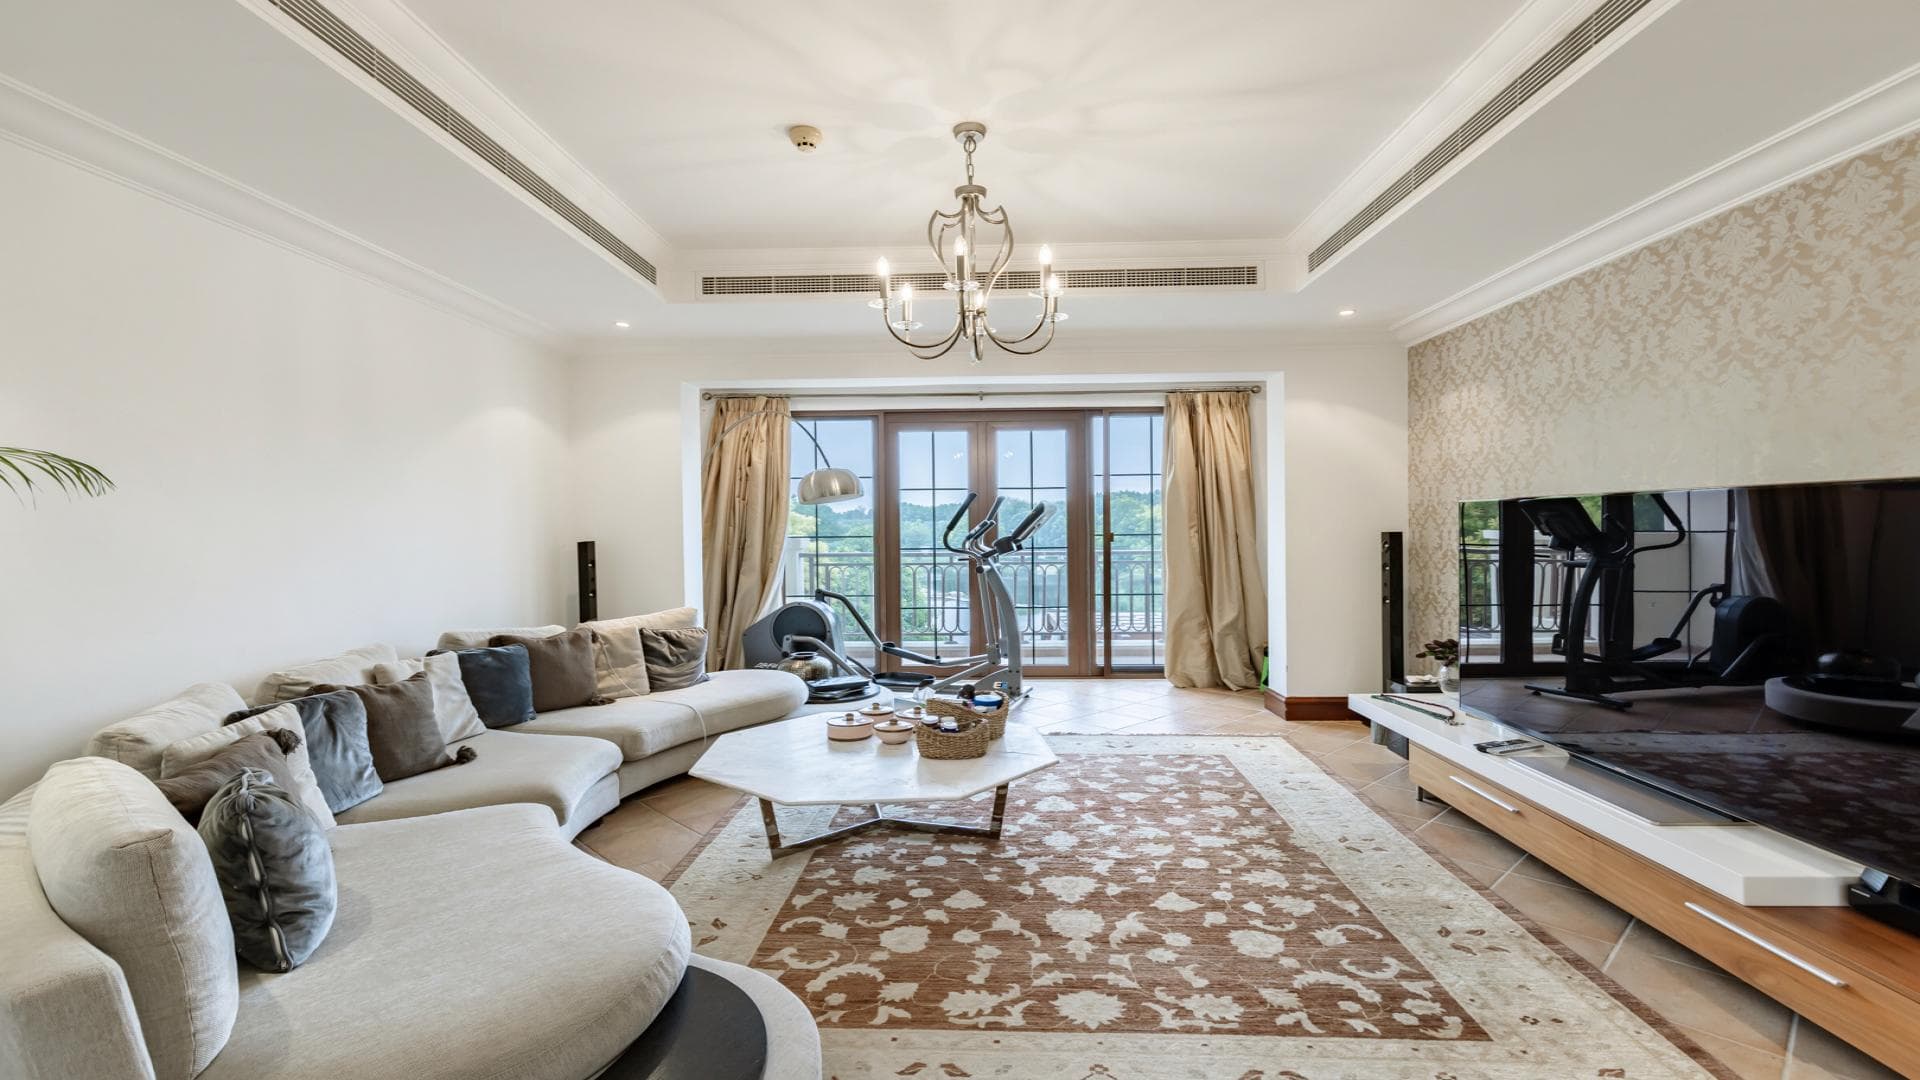 5 Bedroom Villa For Sale Al Thamam 01 Lp38070 13a0be5d26b79a00.jpg